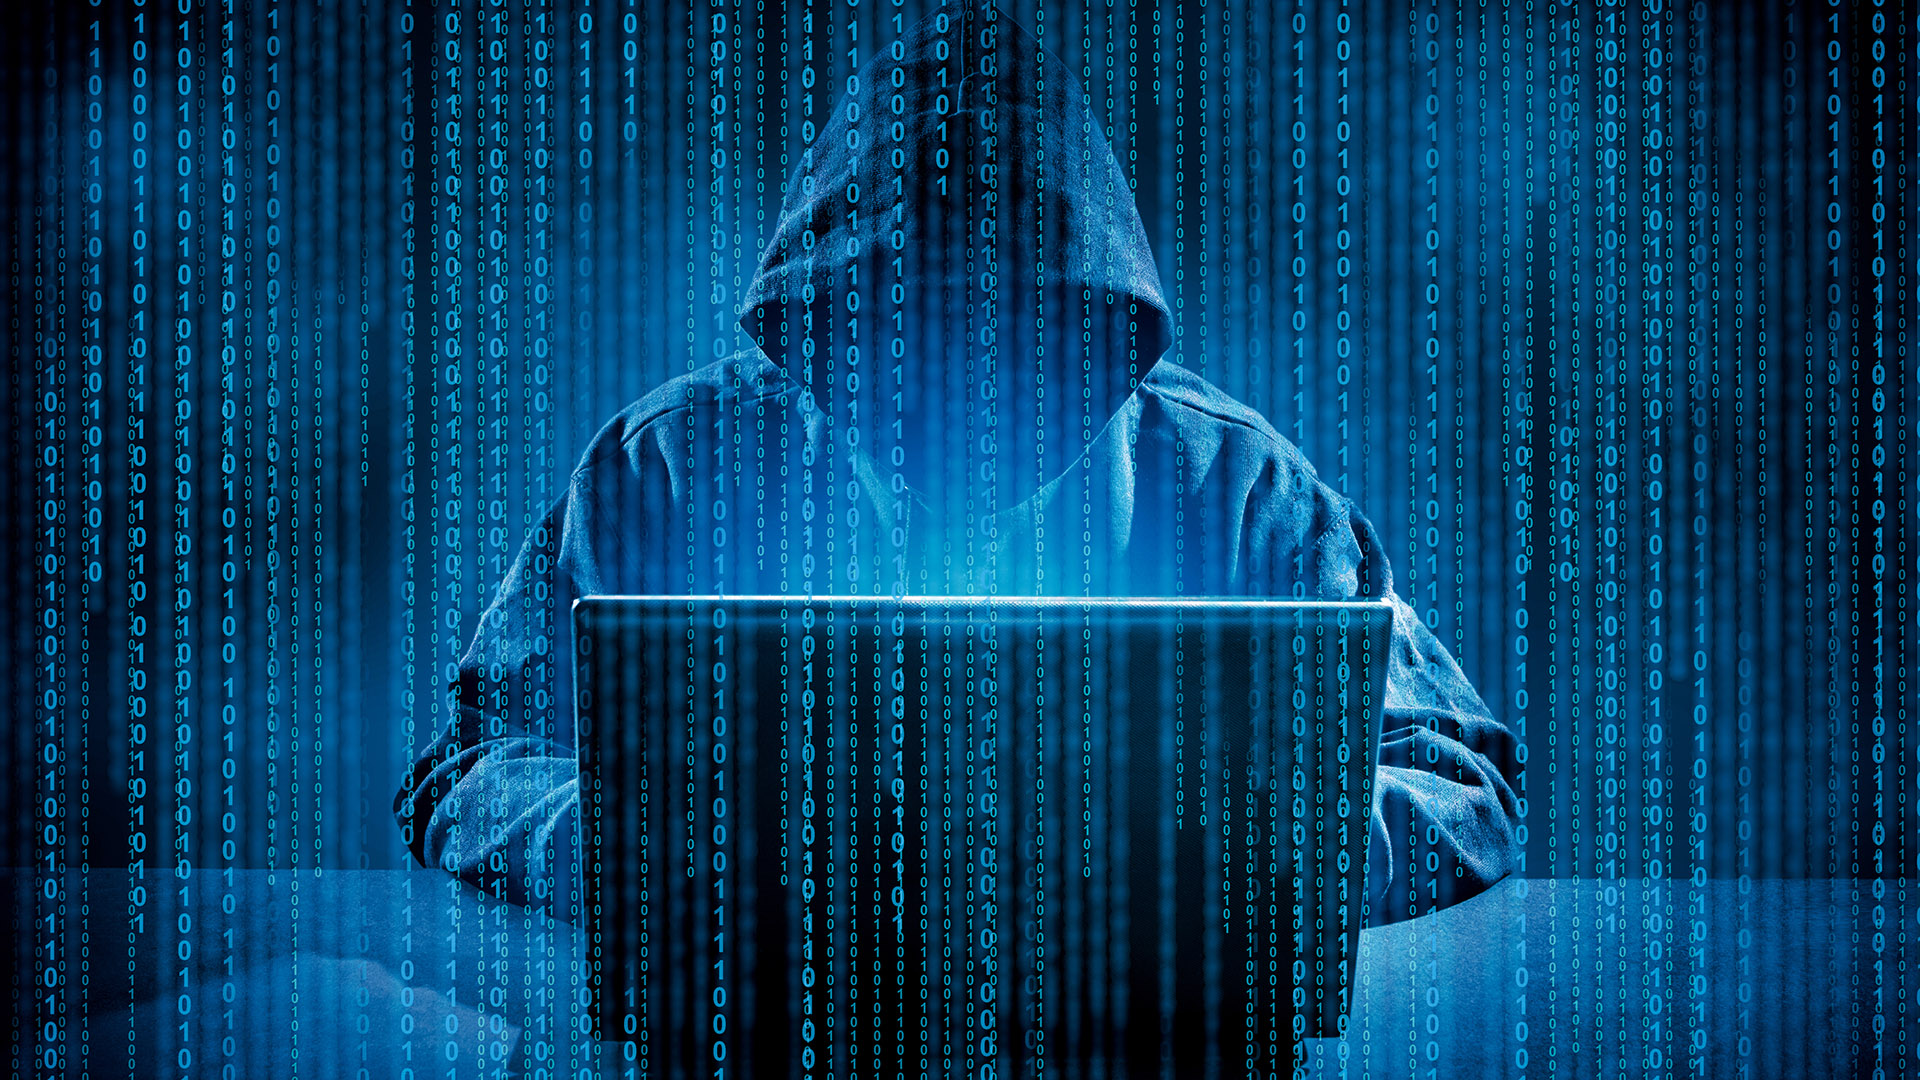 Conti y LAPSUS$ son dos grupos de cibercriminales que han realizado ataques informáticos en la región. 